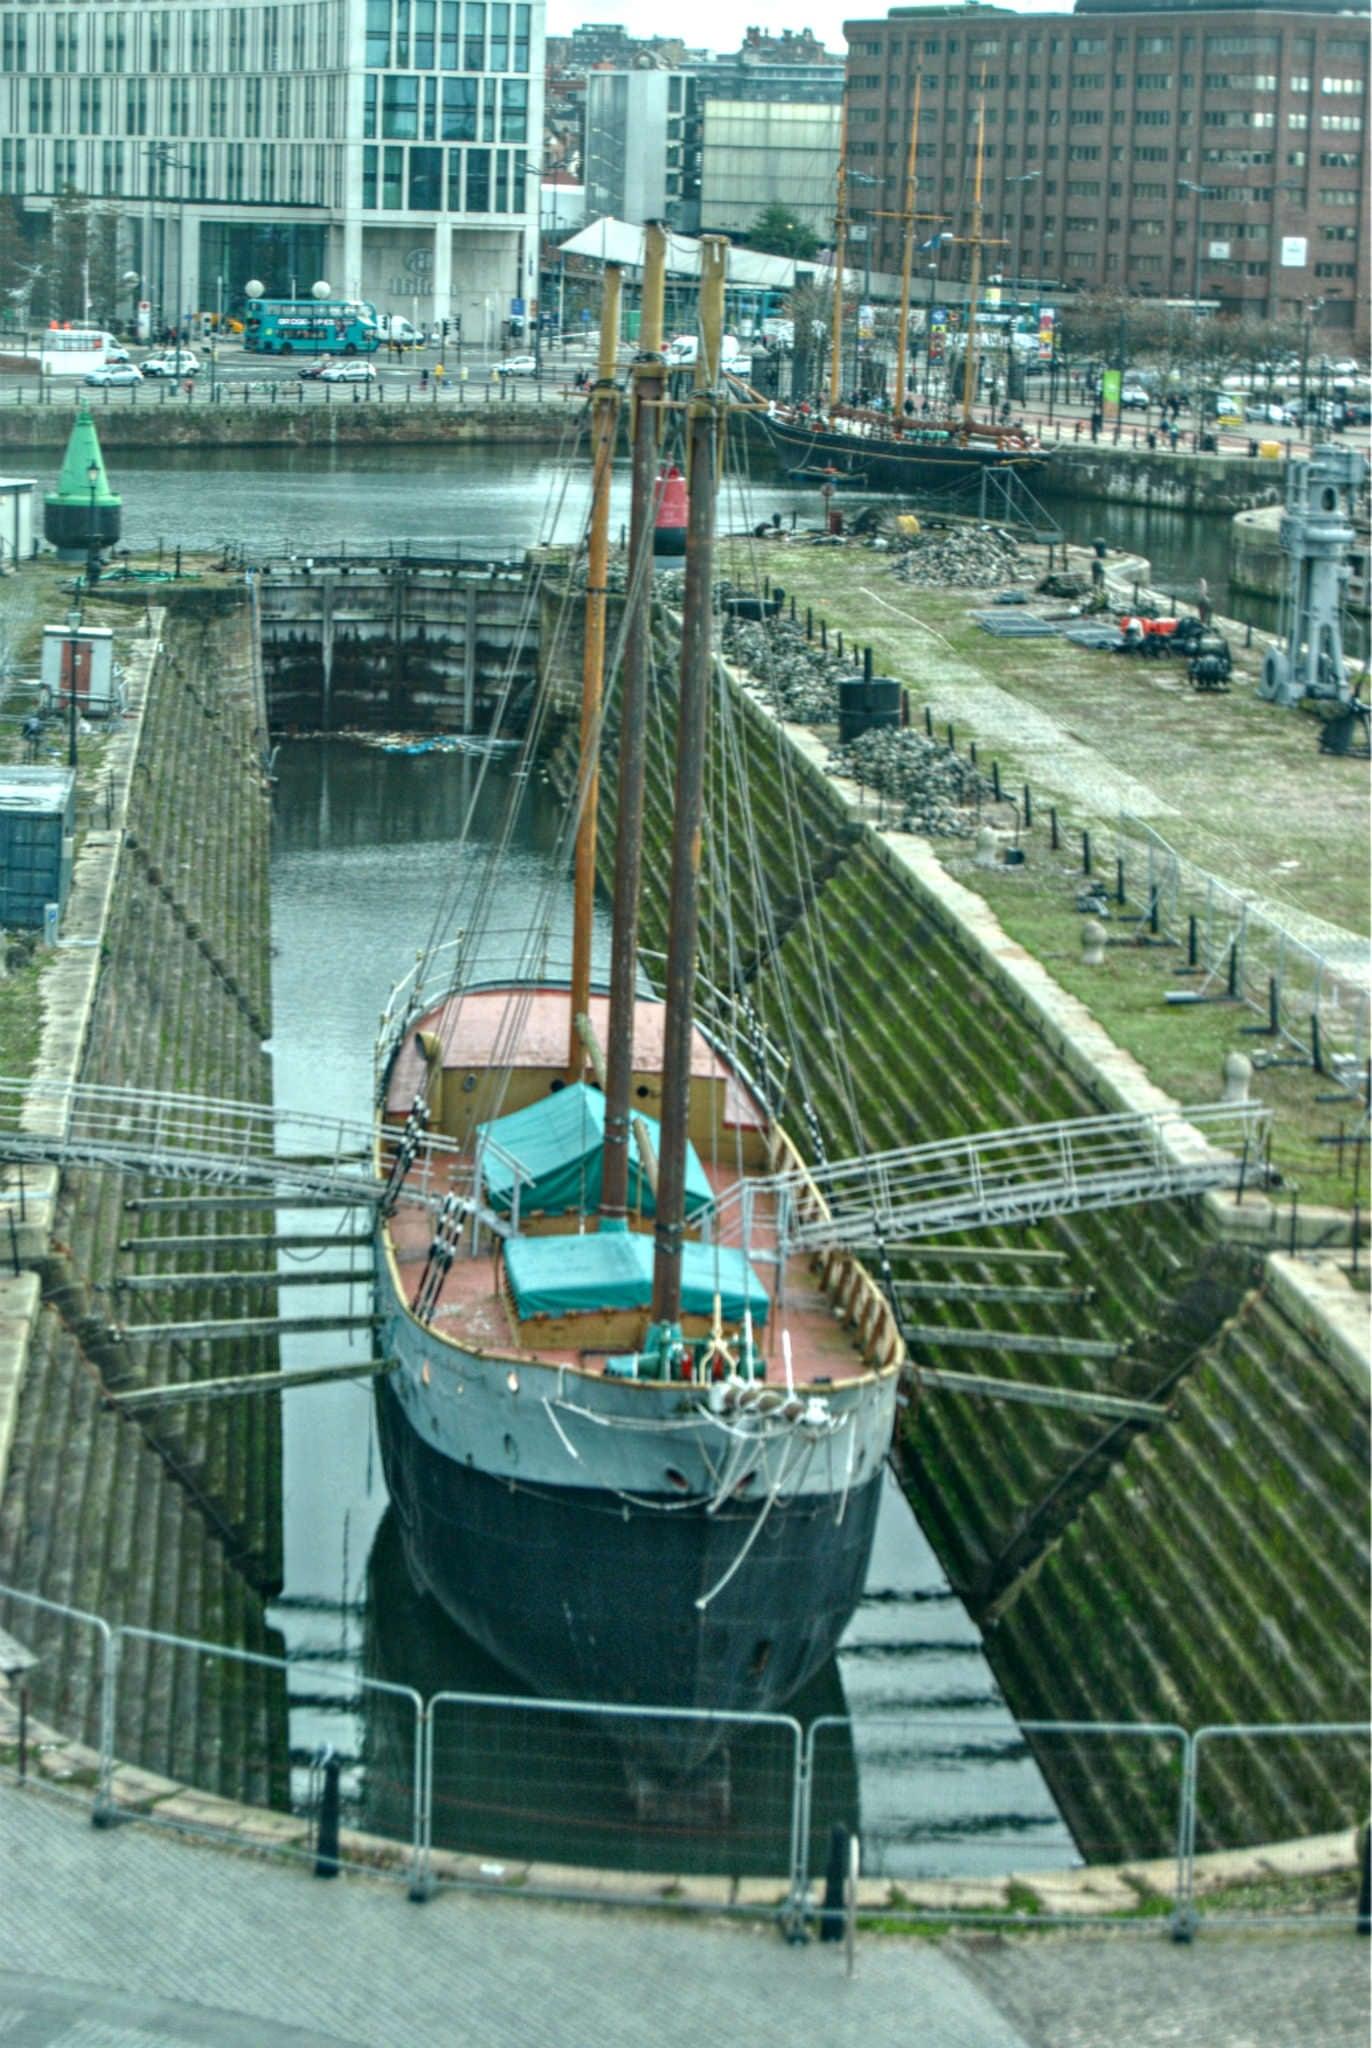 De Wadden の画像. liverpool boat drydock schooner albertdock merseyside dewadden